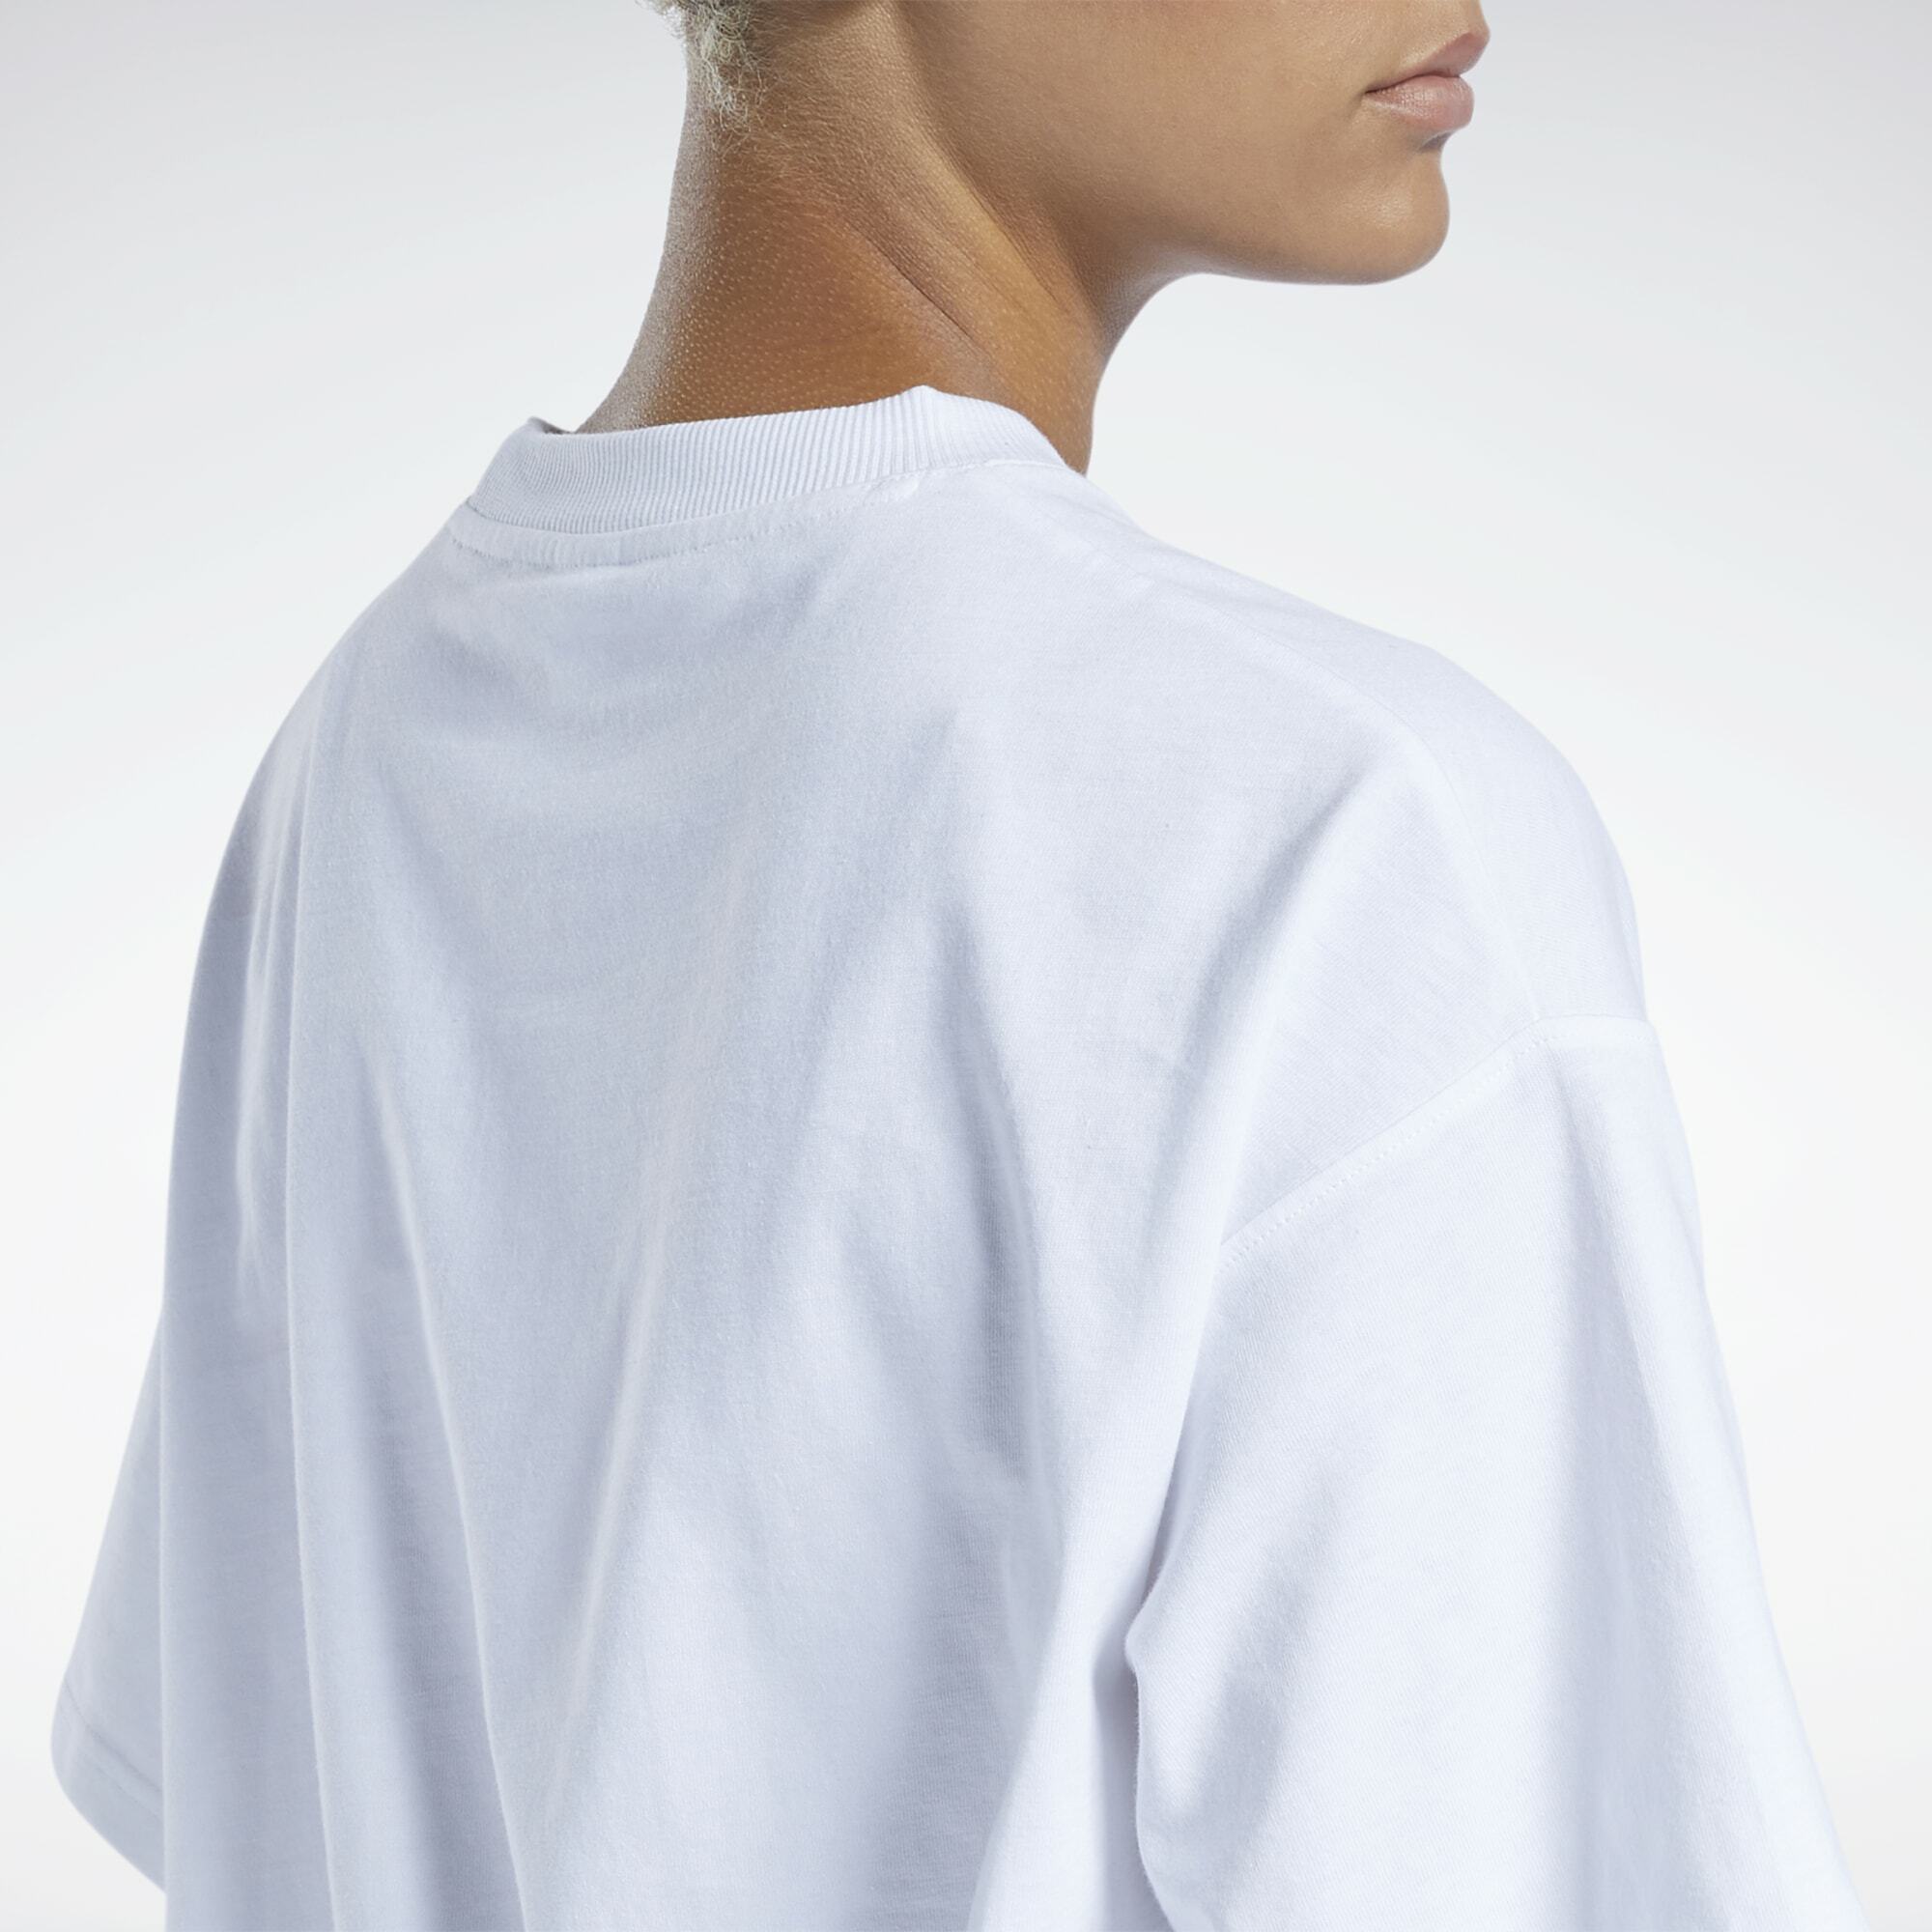 Odzież MbR1y Reebok Classics Koszulka w kolorze Białym 